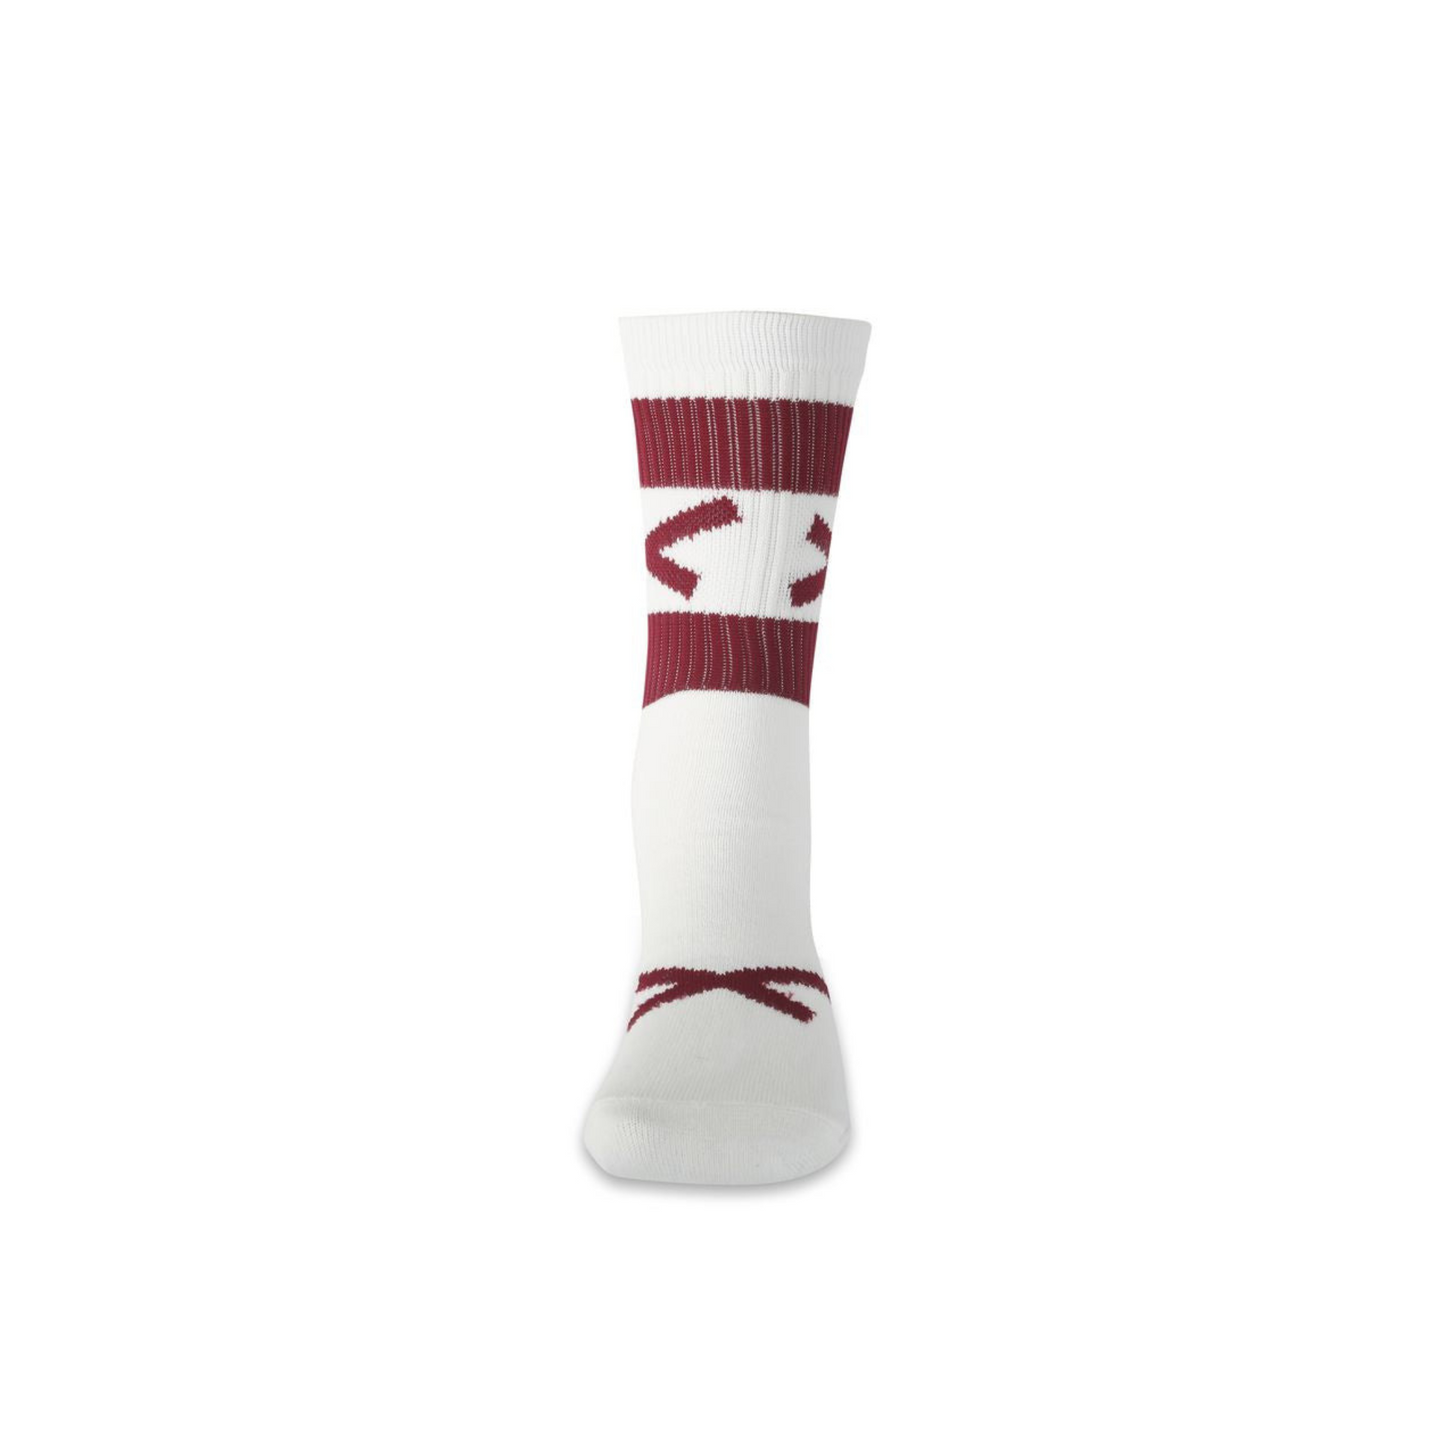 GAA Midi  Socks Half socks (Maroon + White)